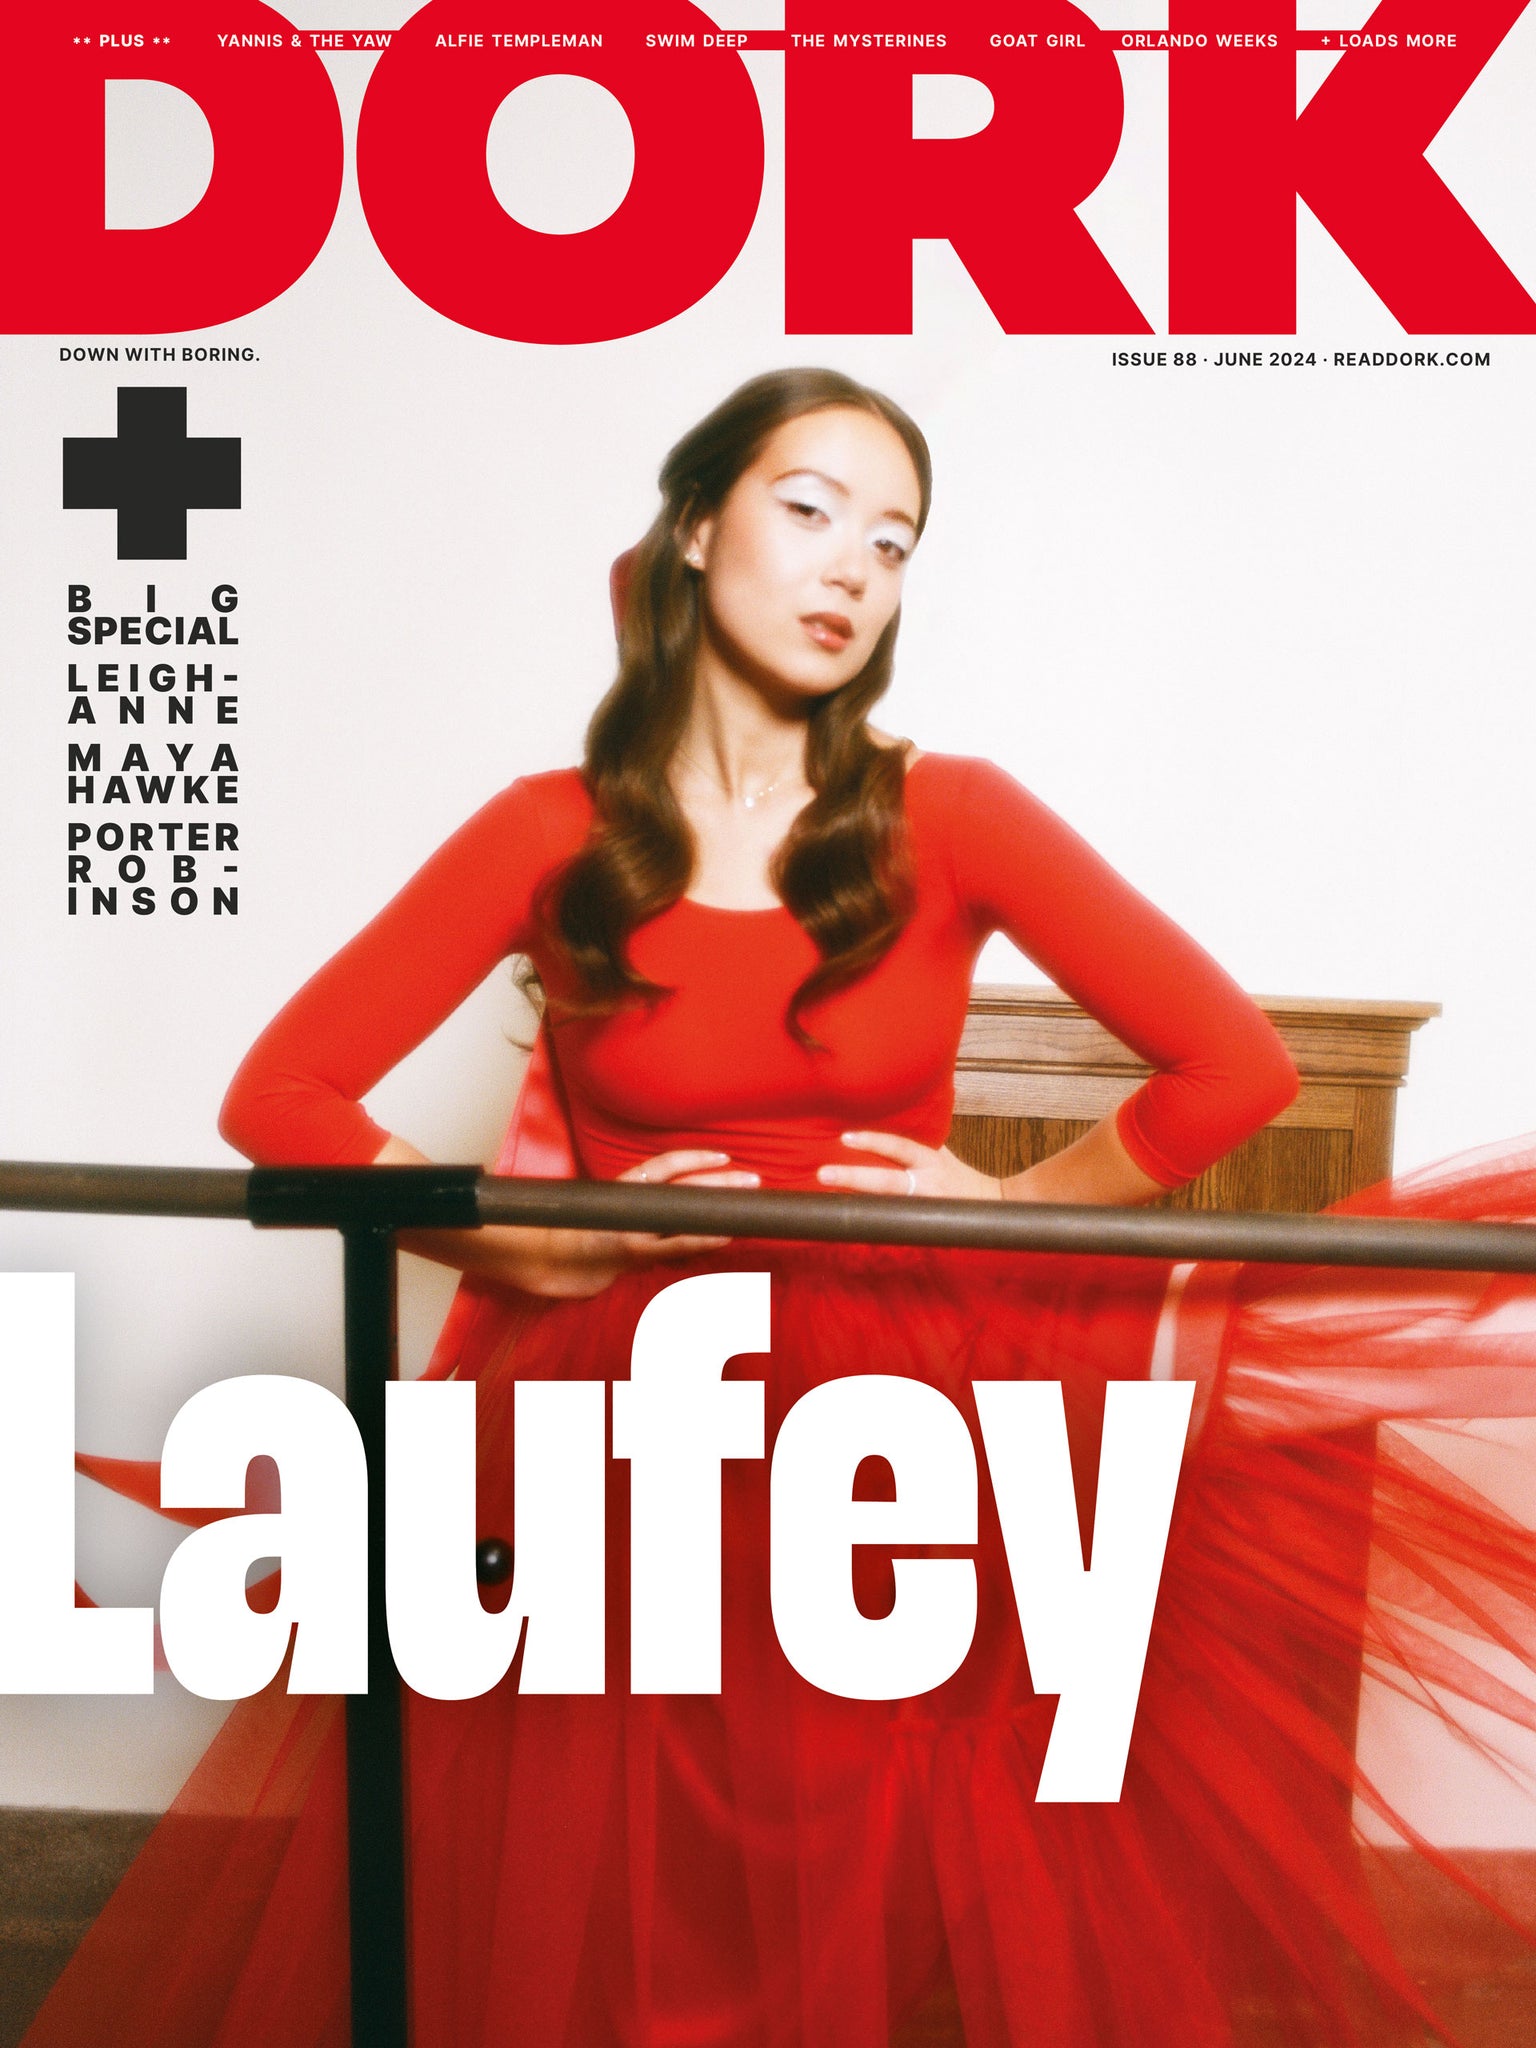 Dork, June 2024 (Laufey cover)